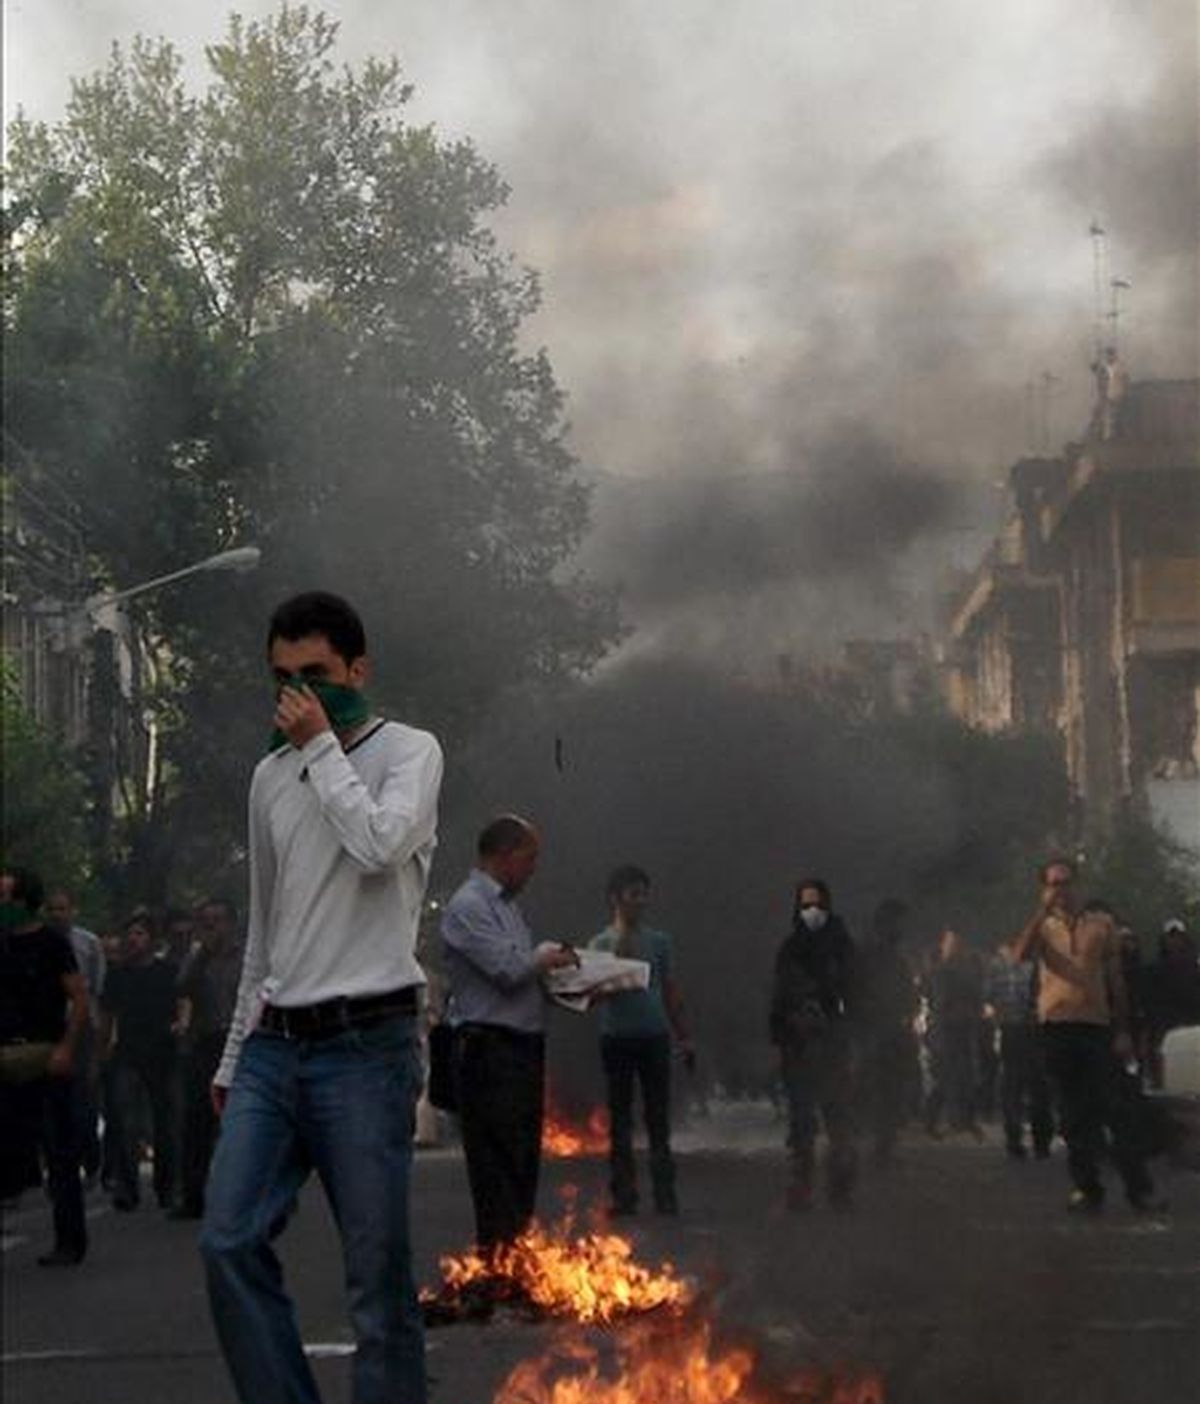 Fotografía recibida a través de Demotix Images en las que se obseva a un manifestante en medio del humo y el fuego provocado tras las protestas de la oposición en Teherán. EFE